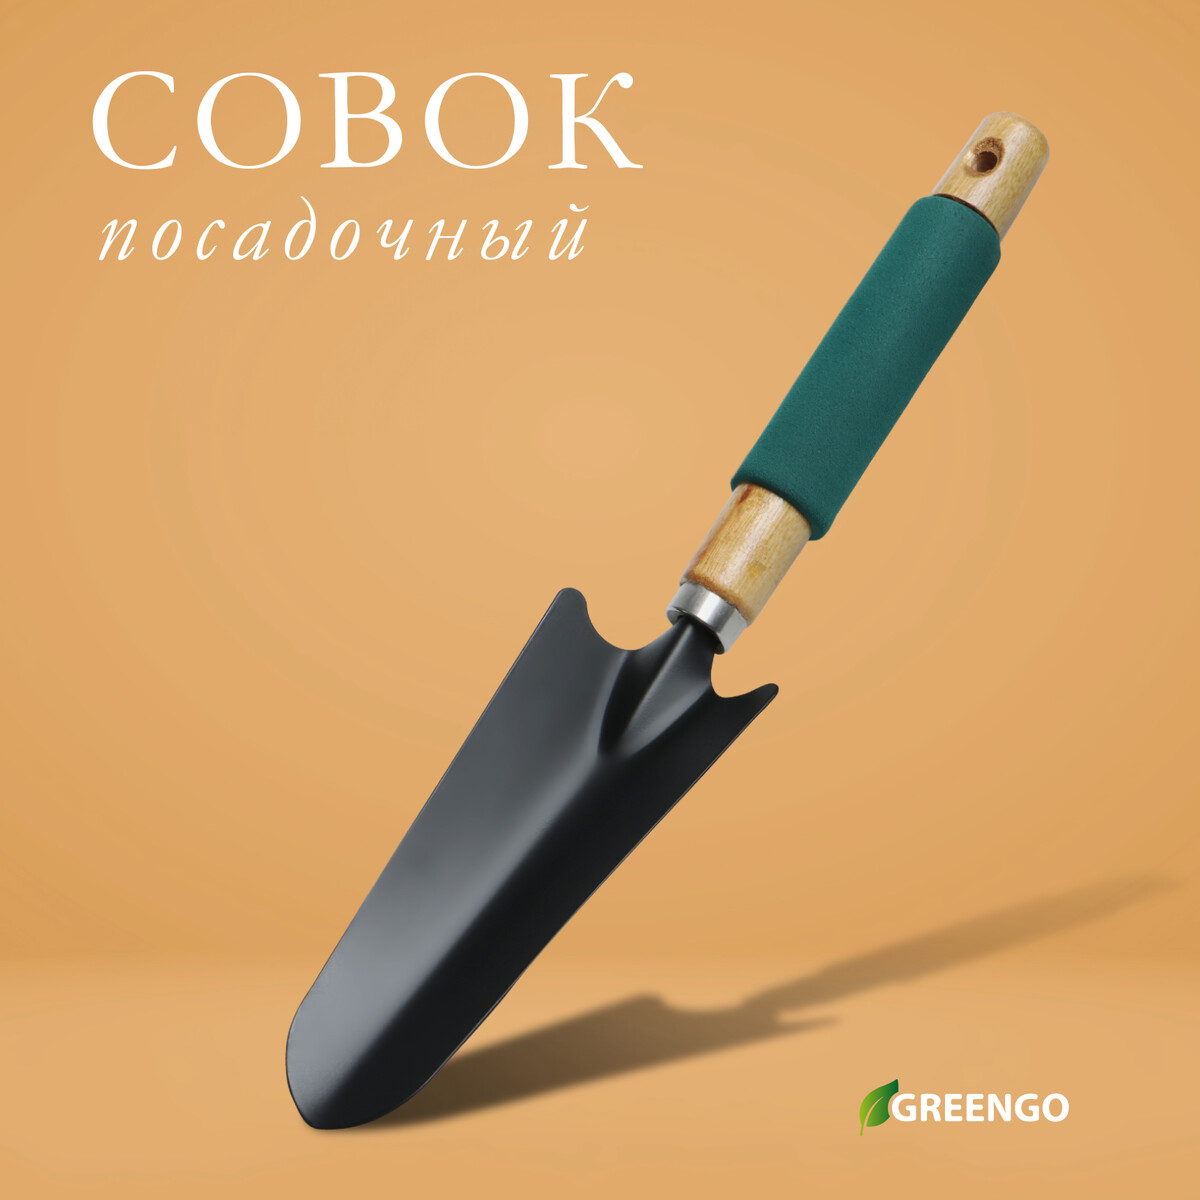 Совок посадочный greengo, длина 33,5 см, ширина 6,5 см, деревянная ручка с поролоном